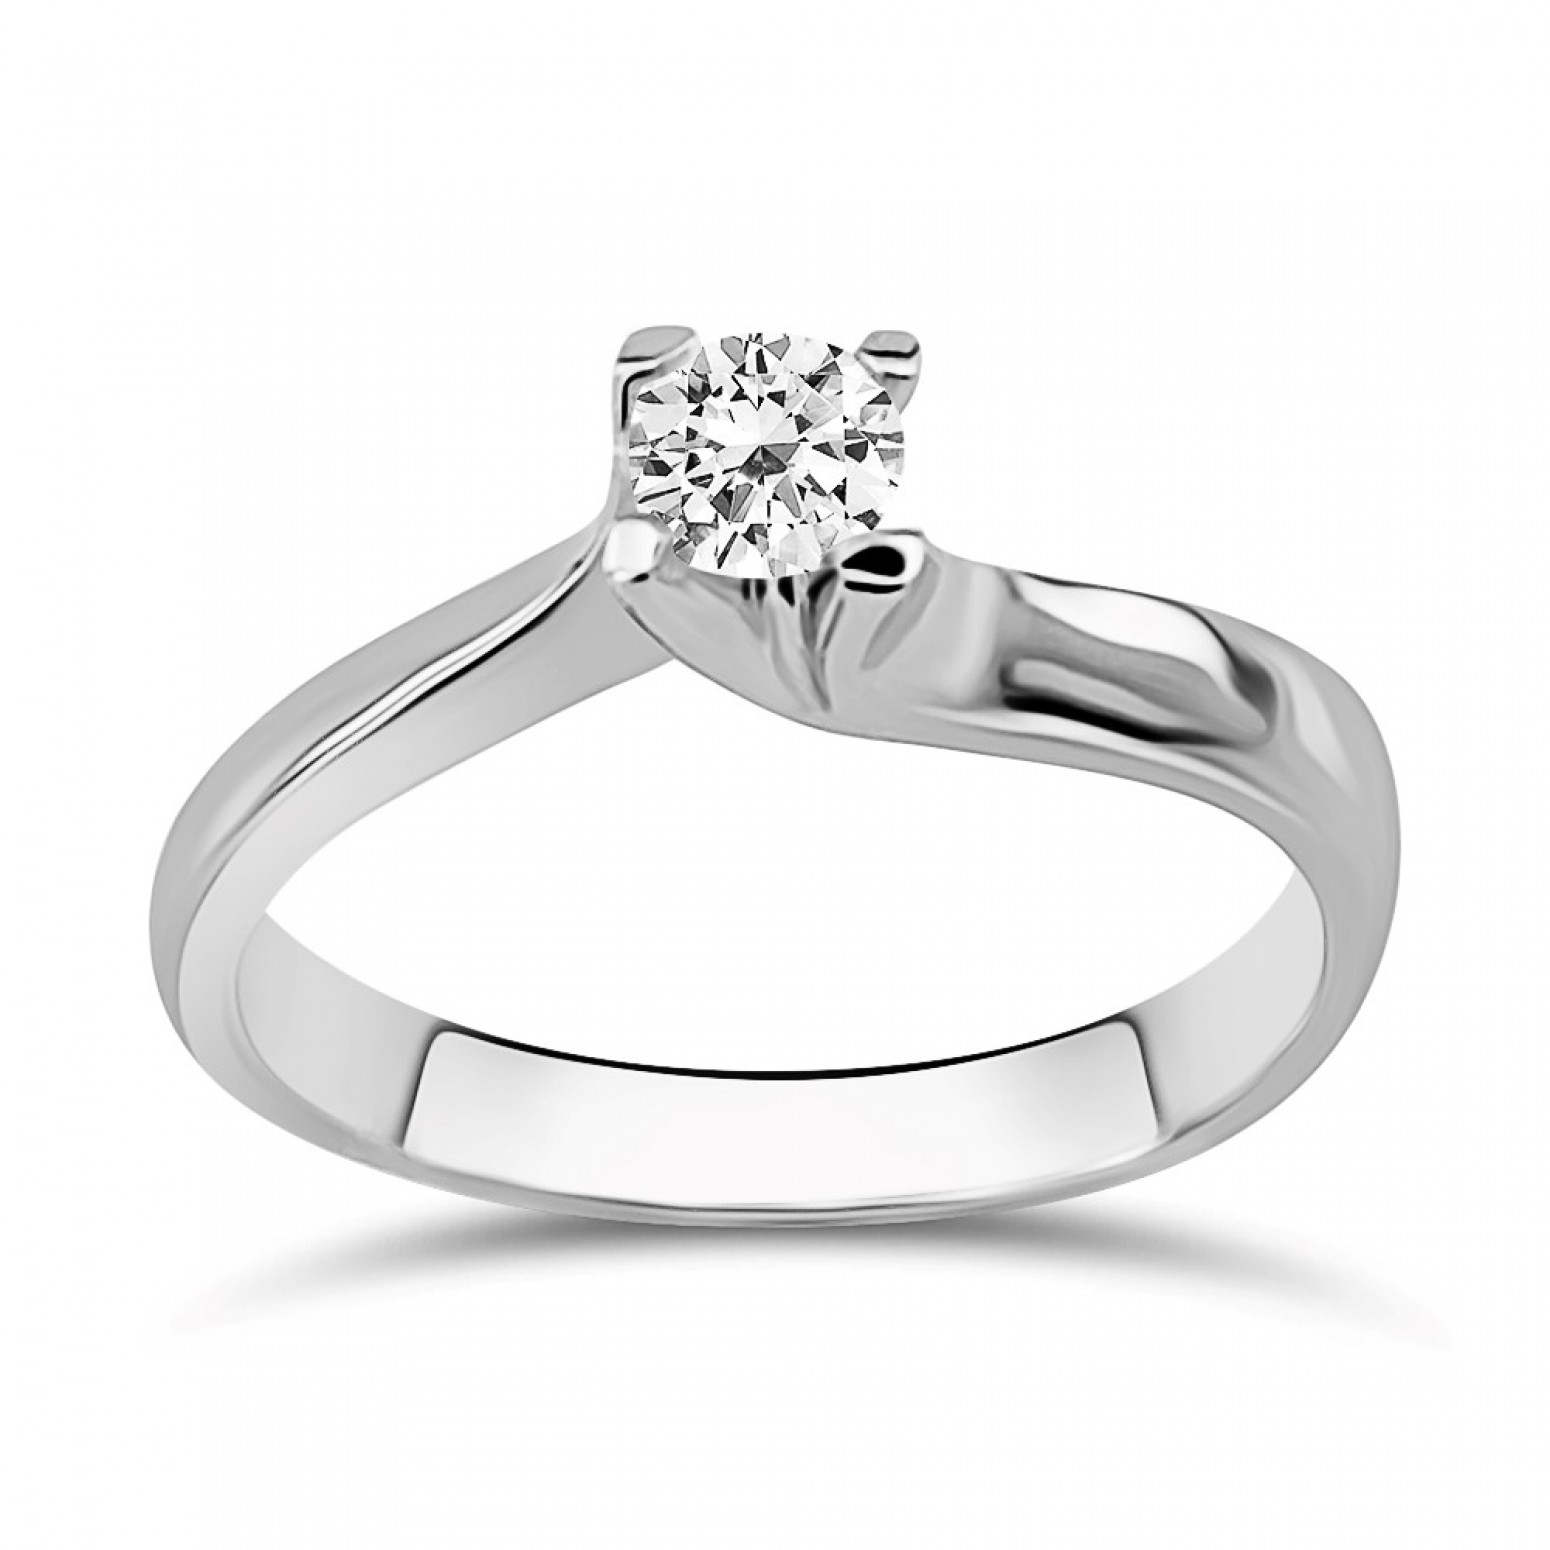 Μονόπετρο δαχτυλίδι Κ18 λευκόχρυσο με διαμάντι 0.23ct, VS1, E από το GIA da3862 ΔΑΧΤΥΛΙΔΙΑ ΑΡΡΑΒΩΝΑ Κοσμηματα - chrilia.gr